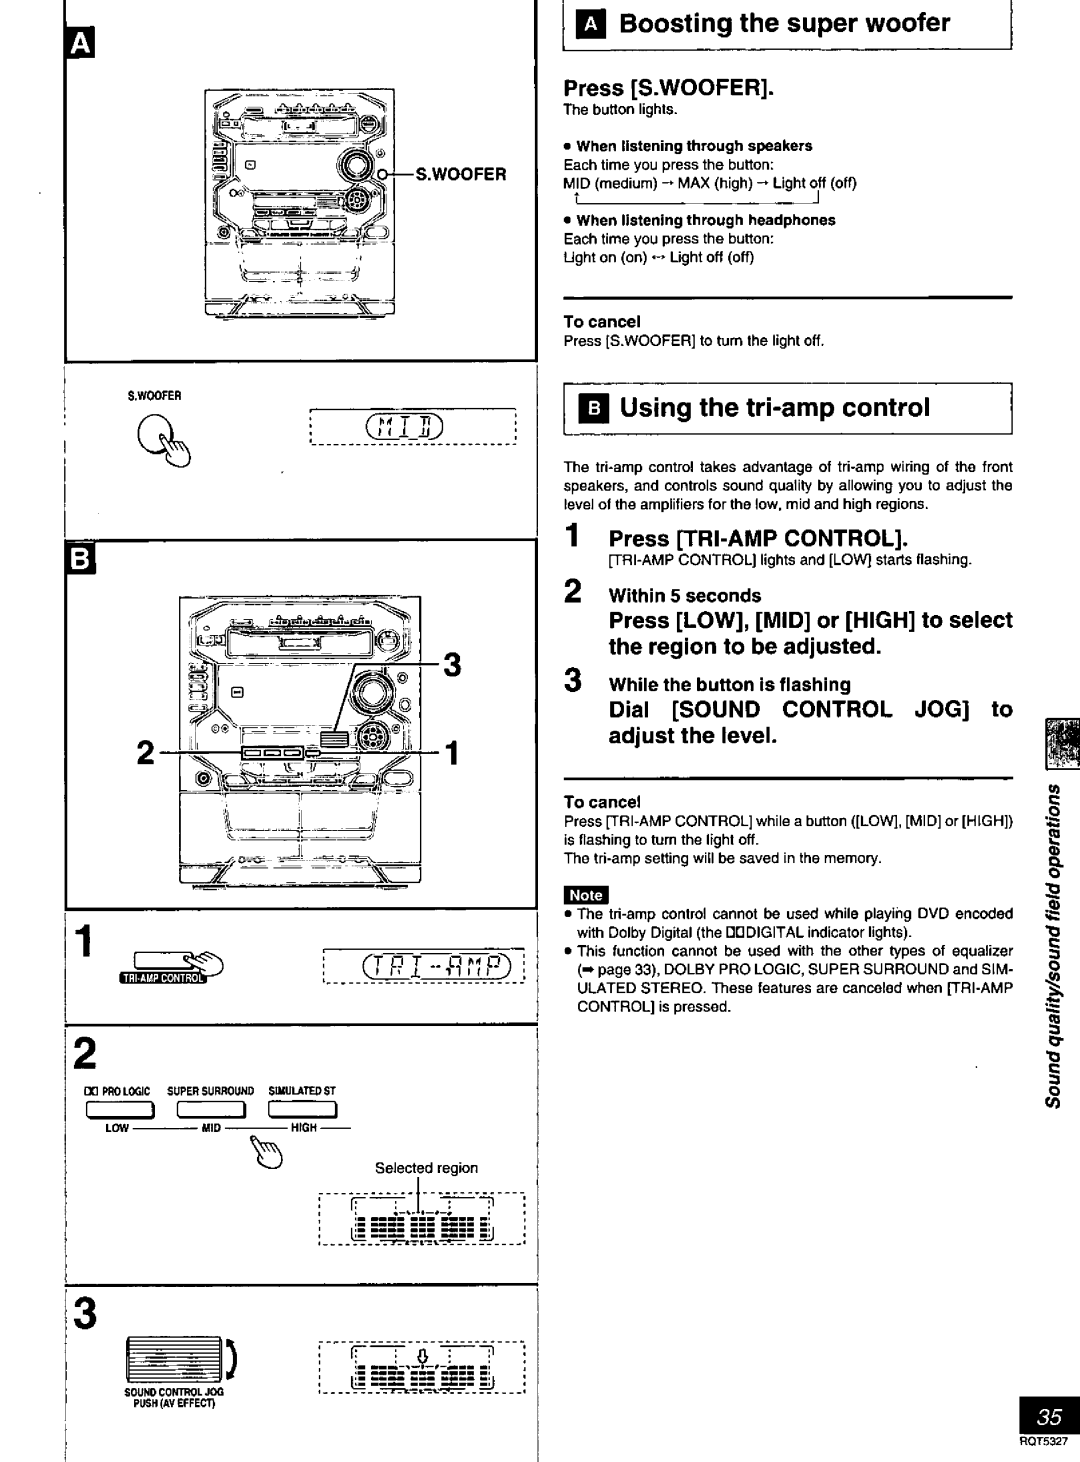 Panasonic SC-DK2 manual 